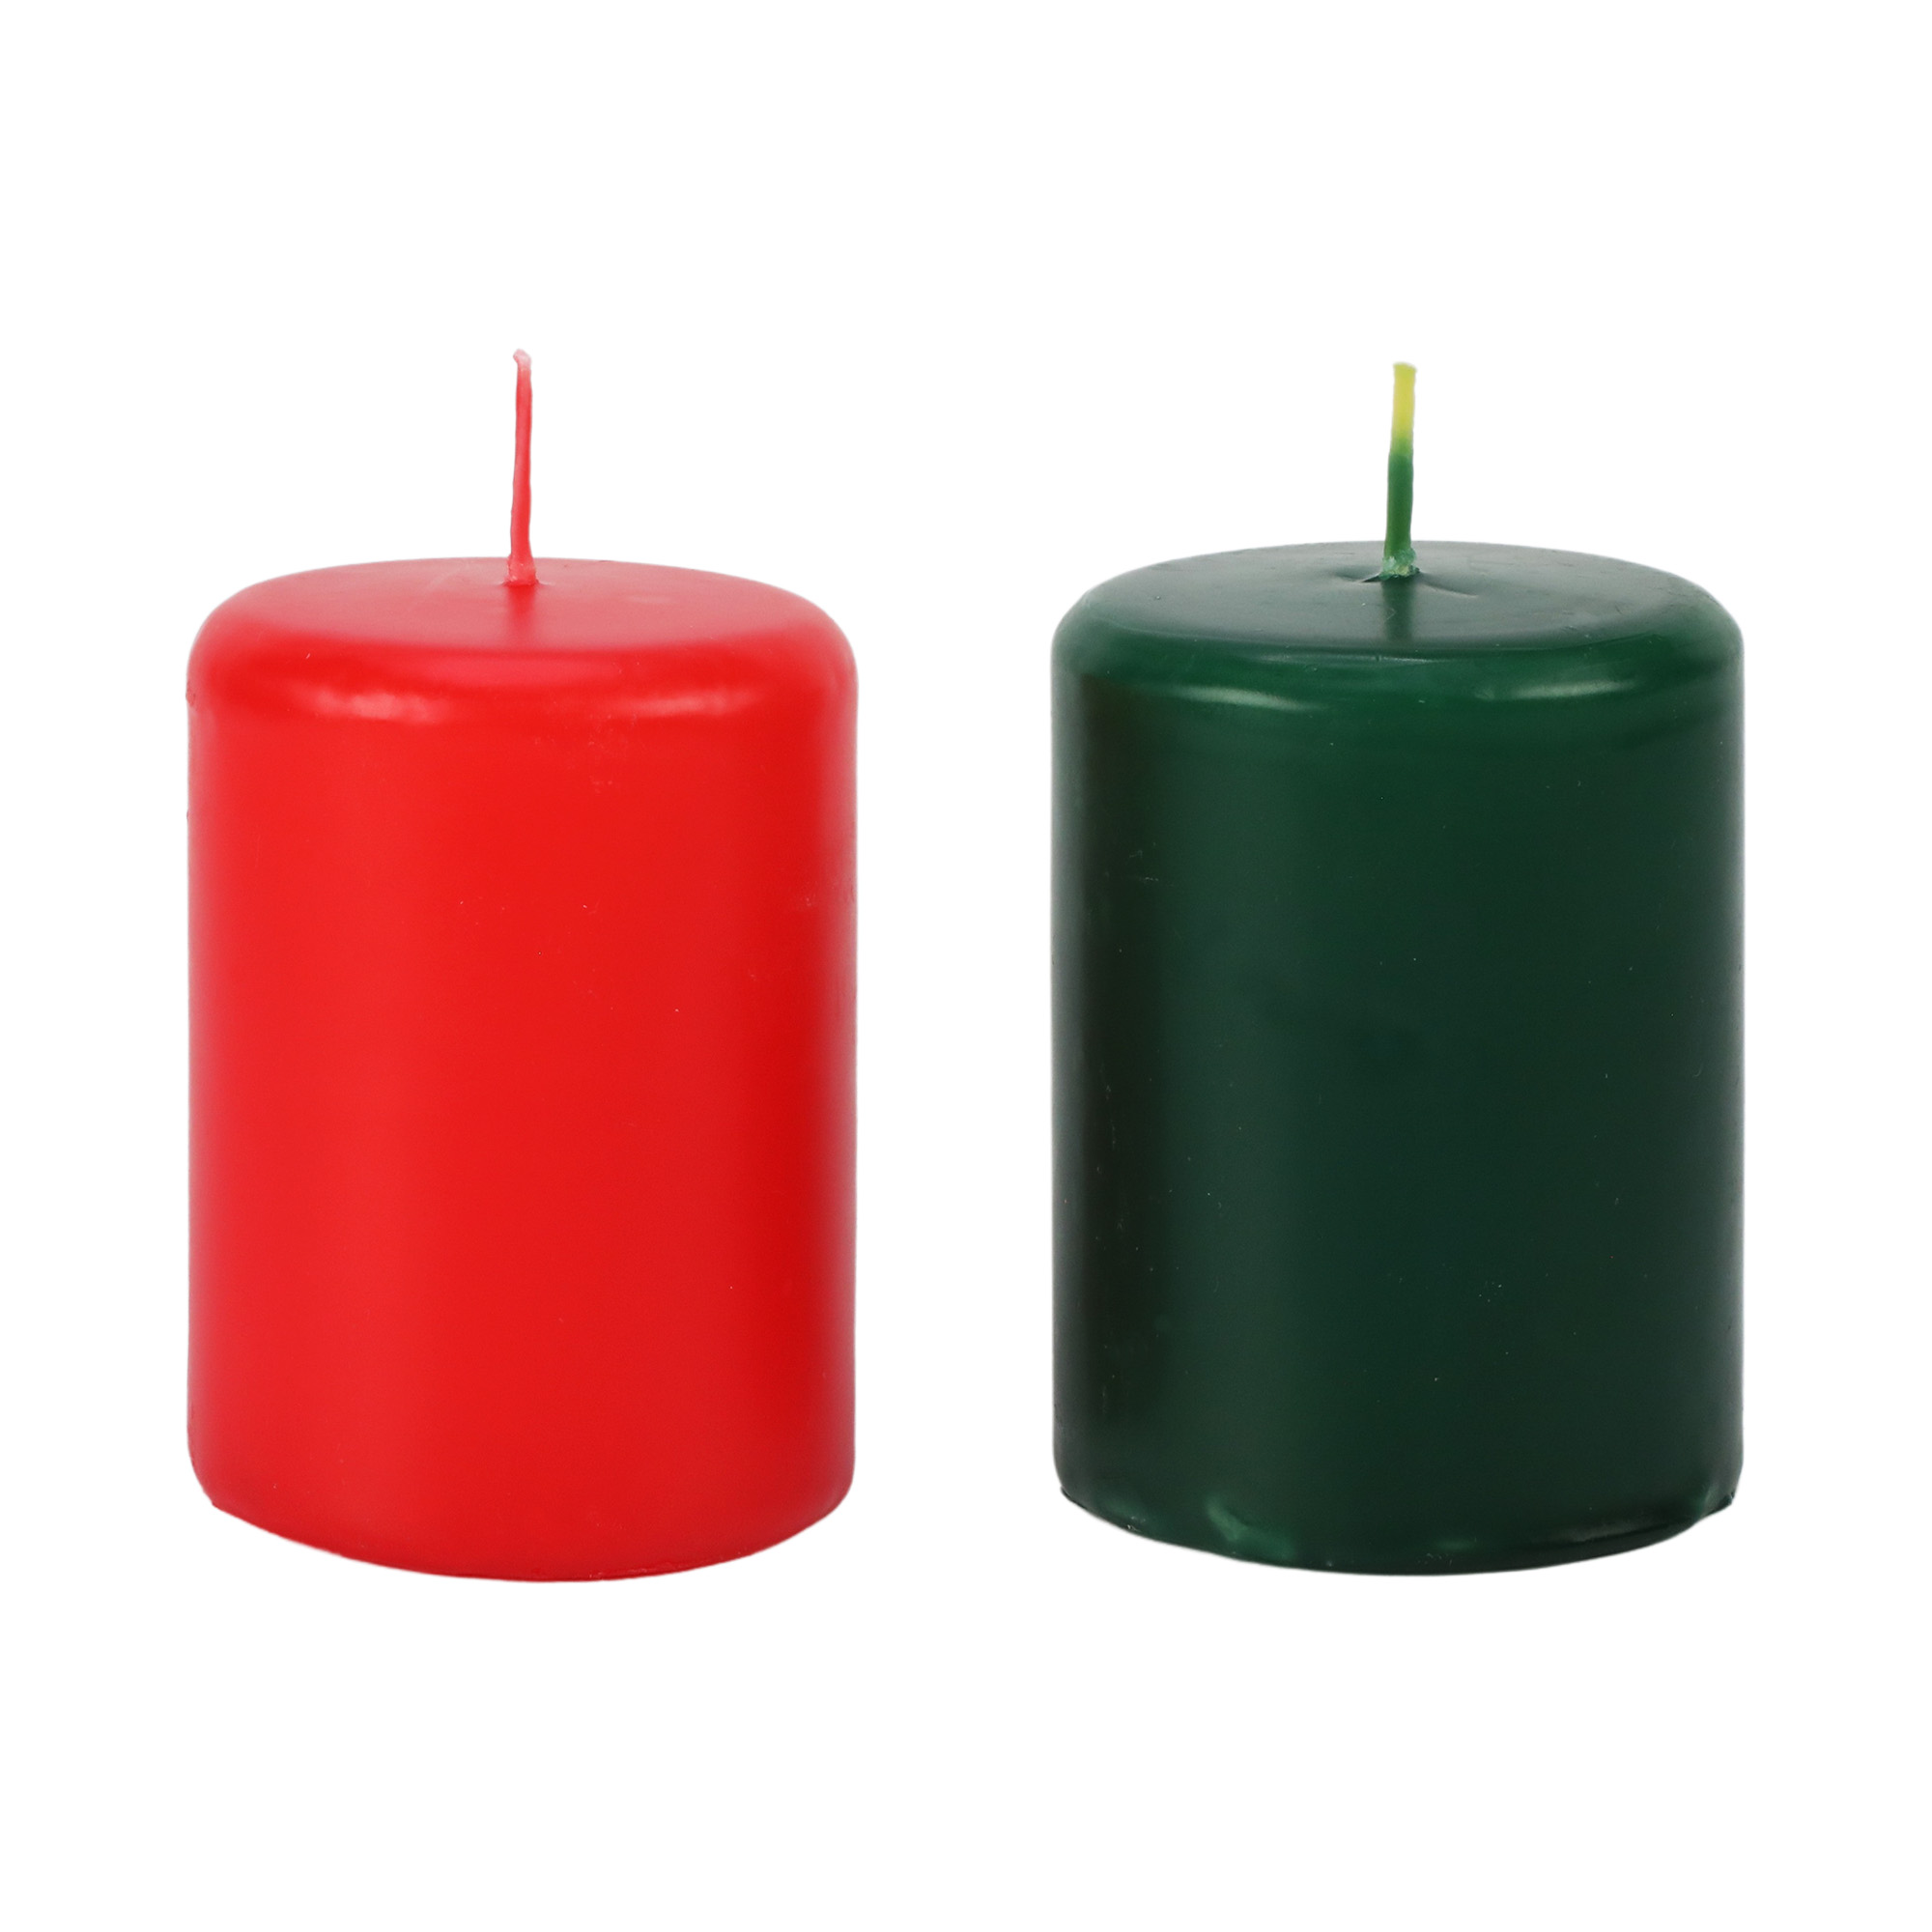 2 velas  Pilar  8 cm x 10 cm  ( cores diversas)